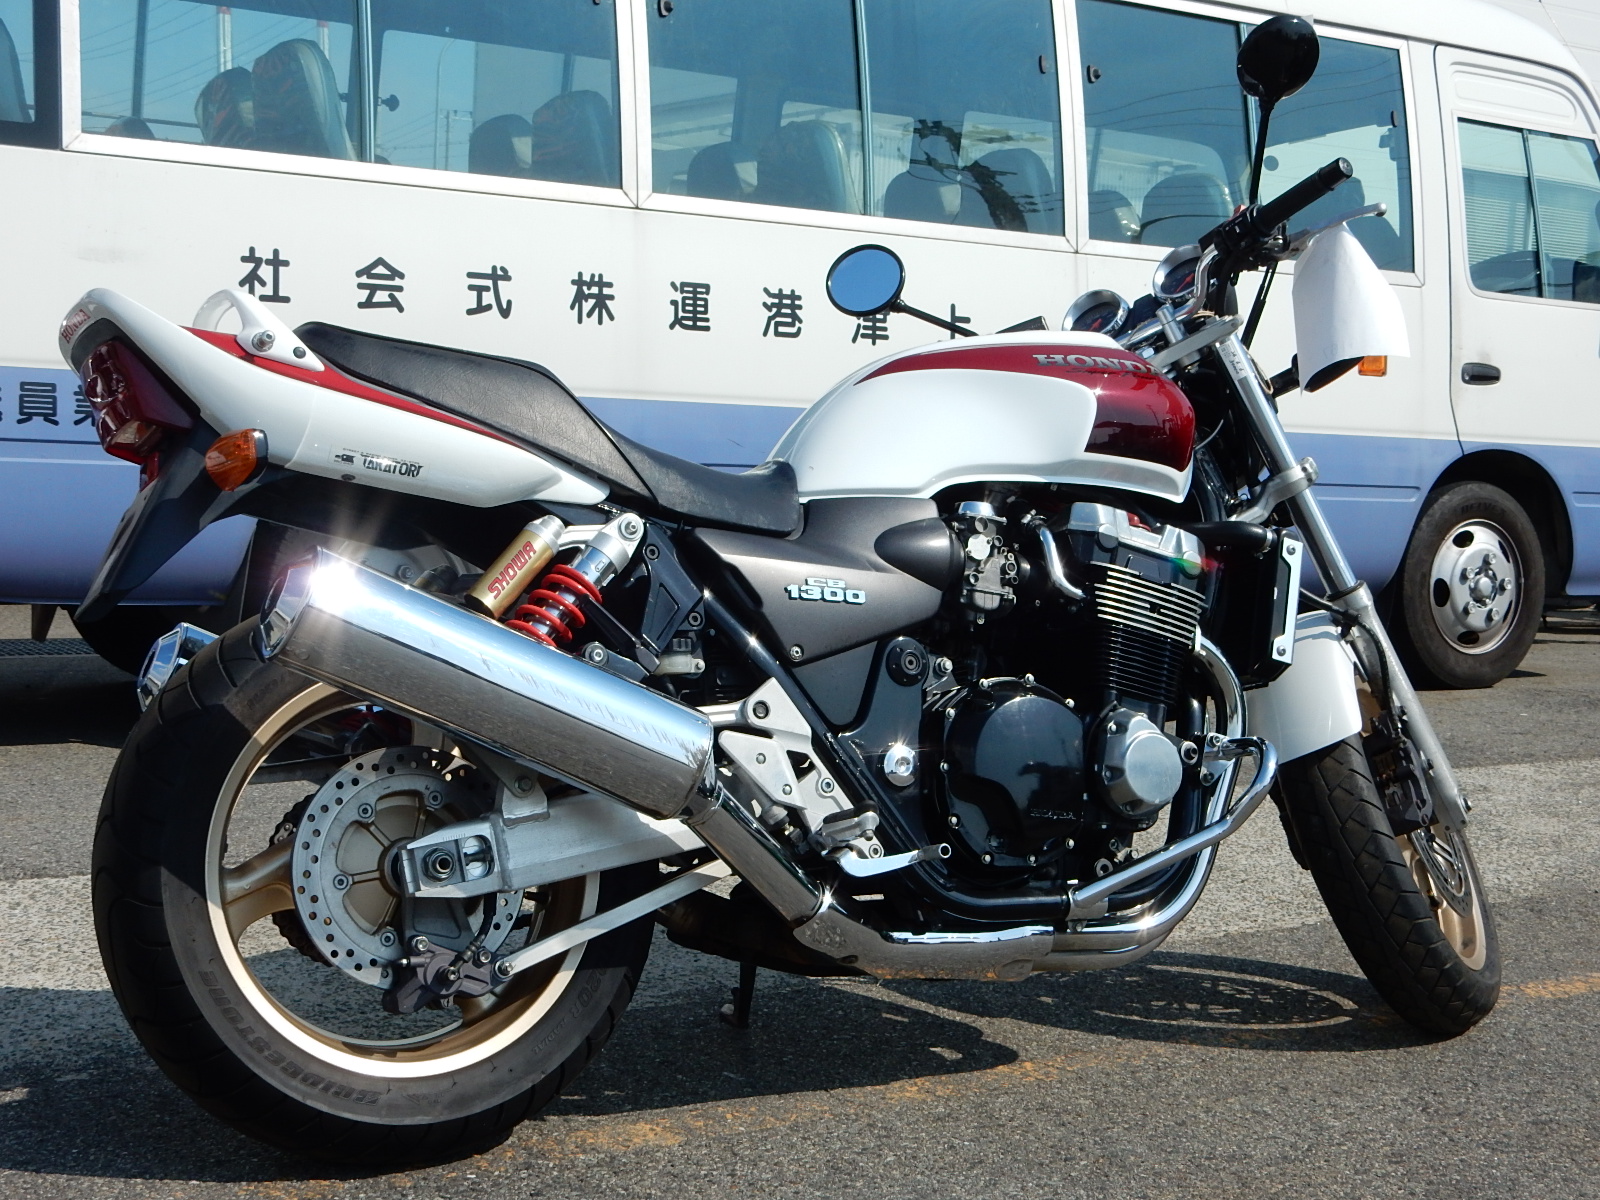 Мотоцикл honda cb 1300: история, обзор, модельный ряд